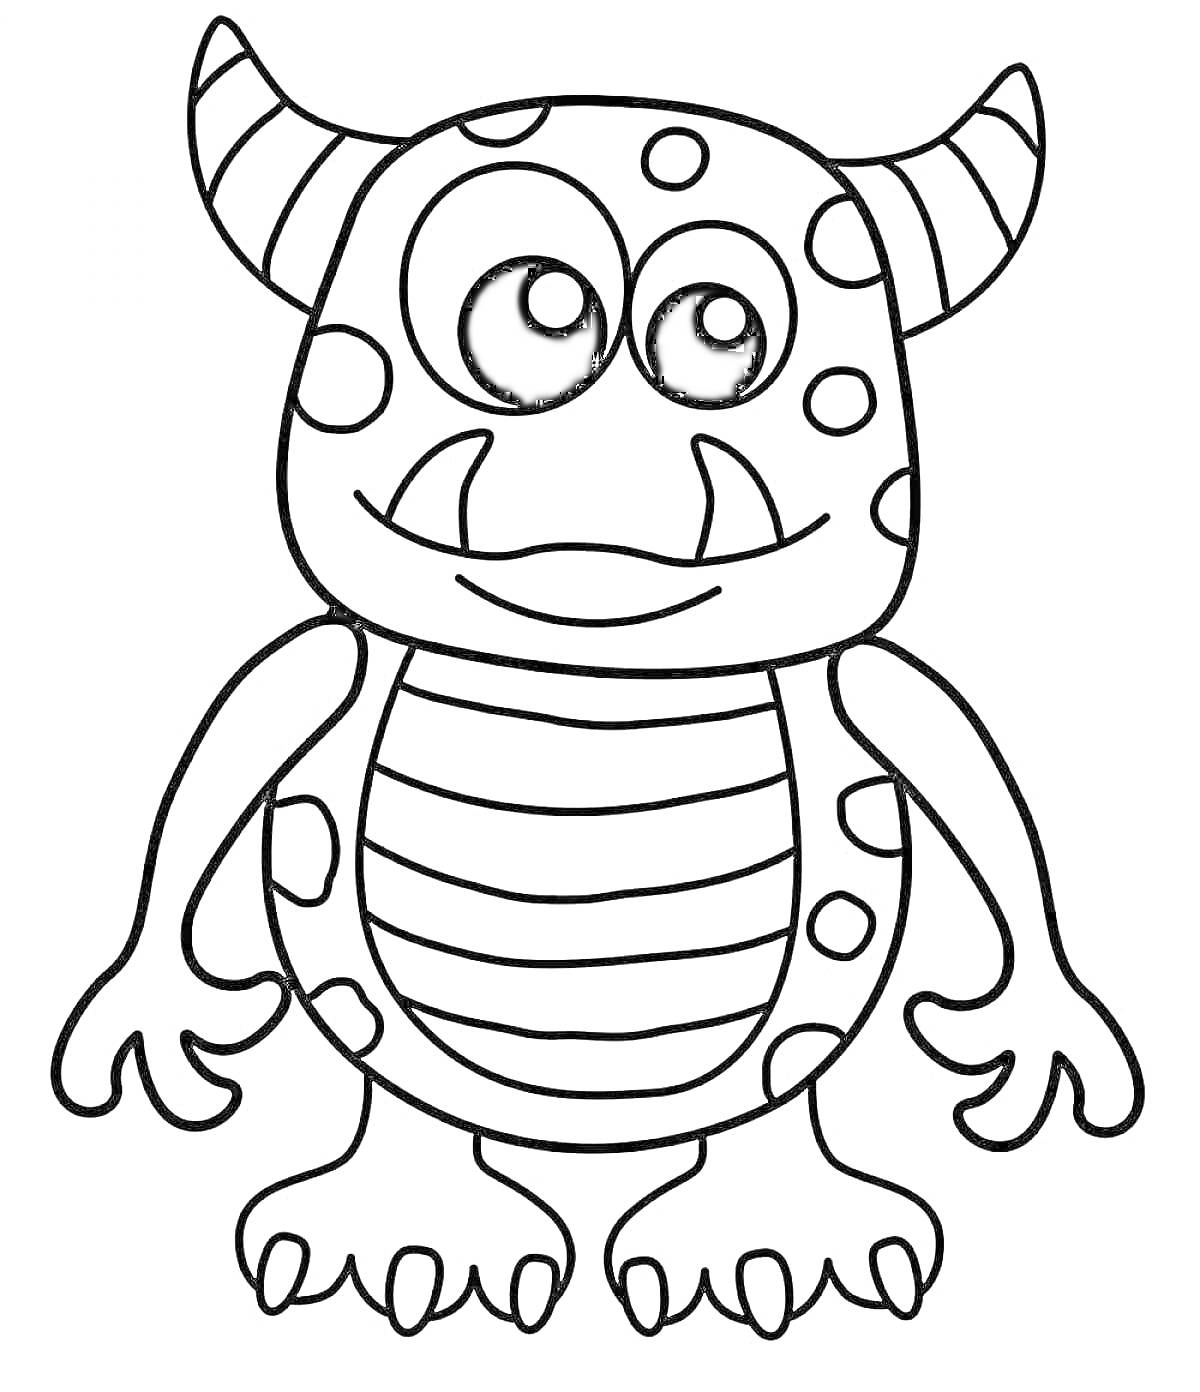 Раскраска Монстрик с полосатым животиком, пятнами на теле и двумя рогами